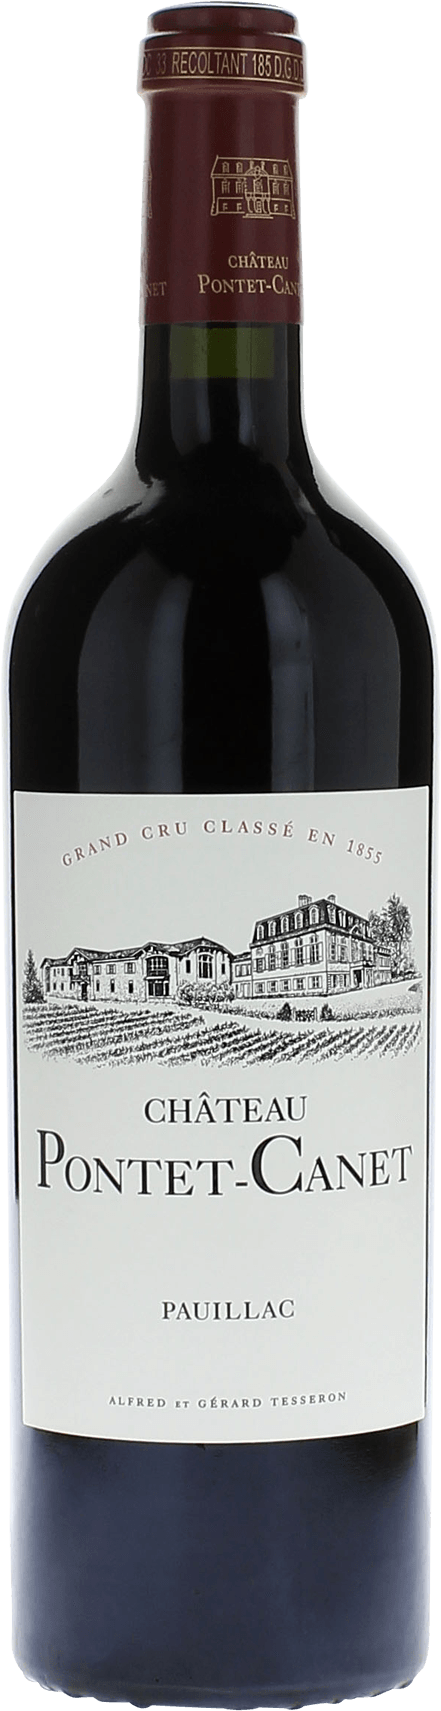 Pontet canet 2017 5me Grand cru class Pauillac, Bordeaux rouge